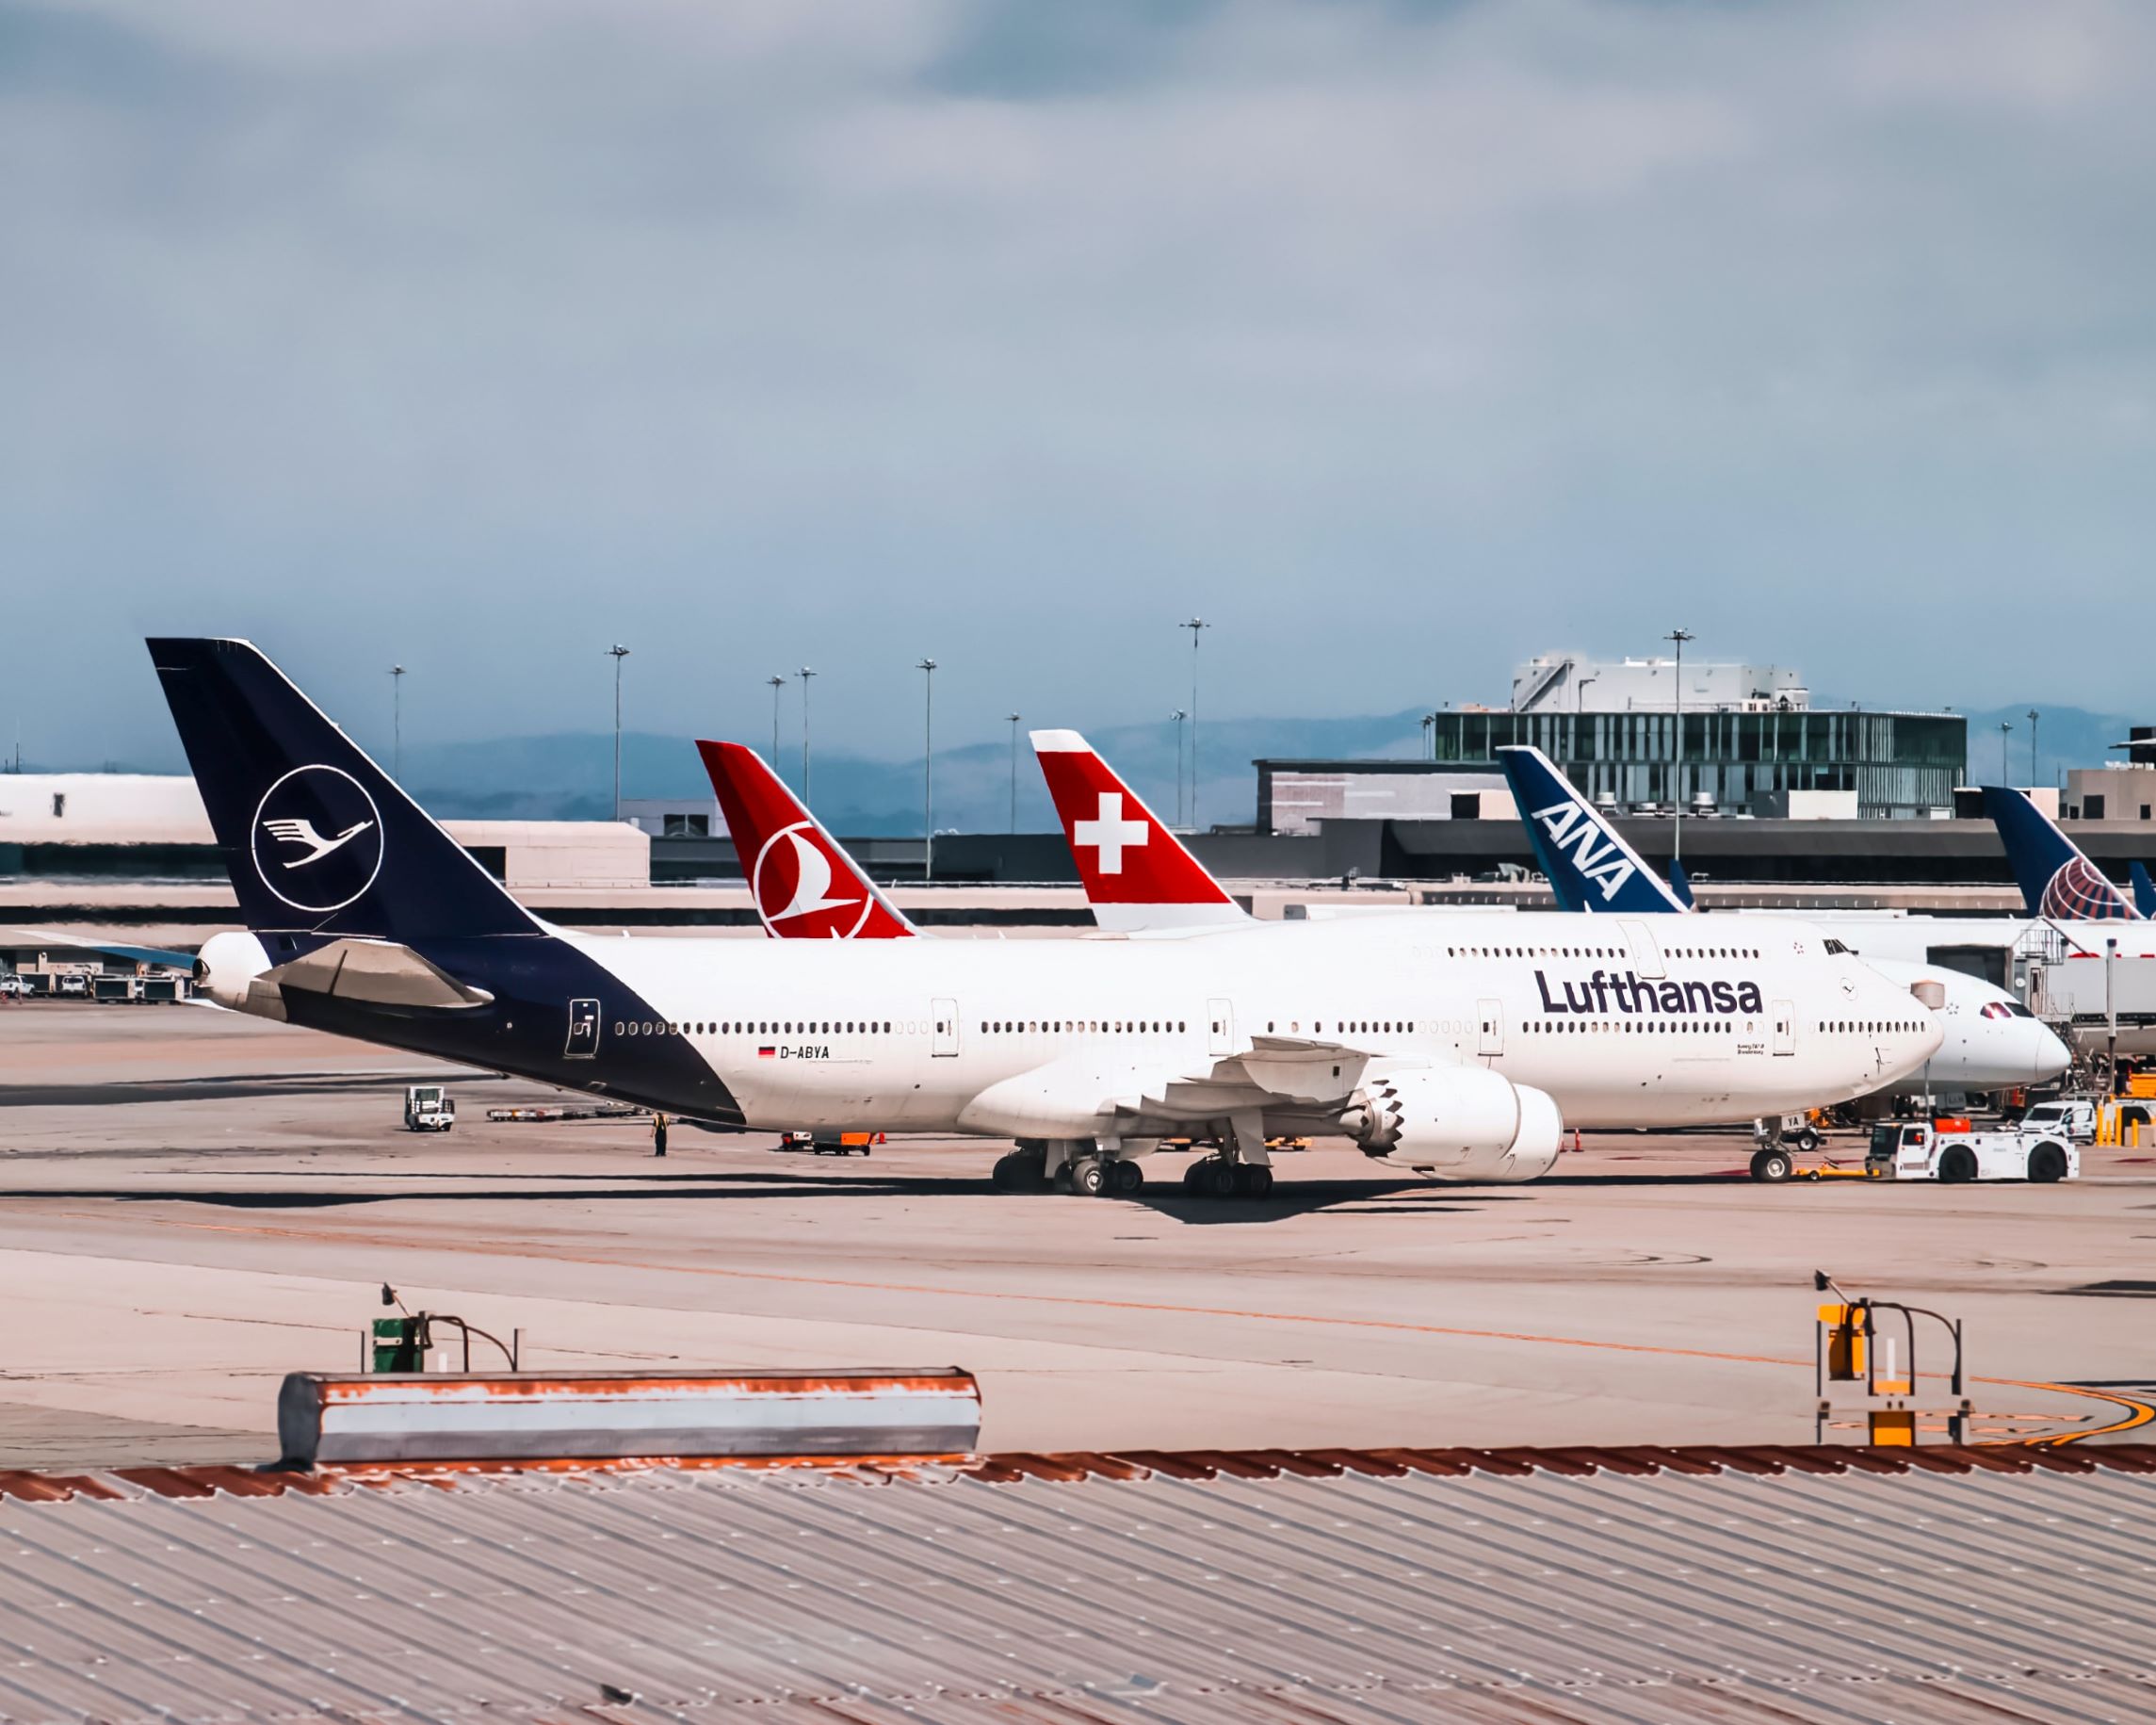 Lufthansa Group is adjusting rebooking fees